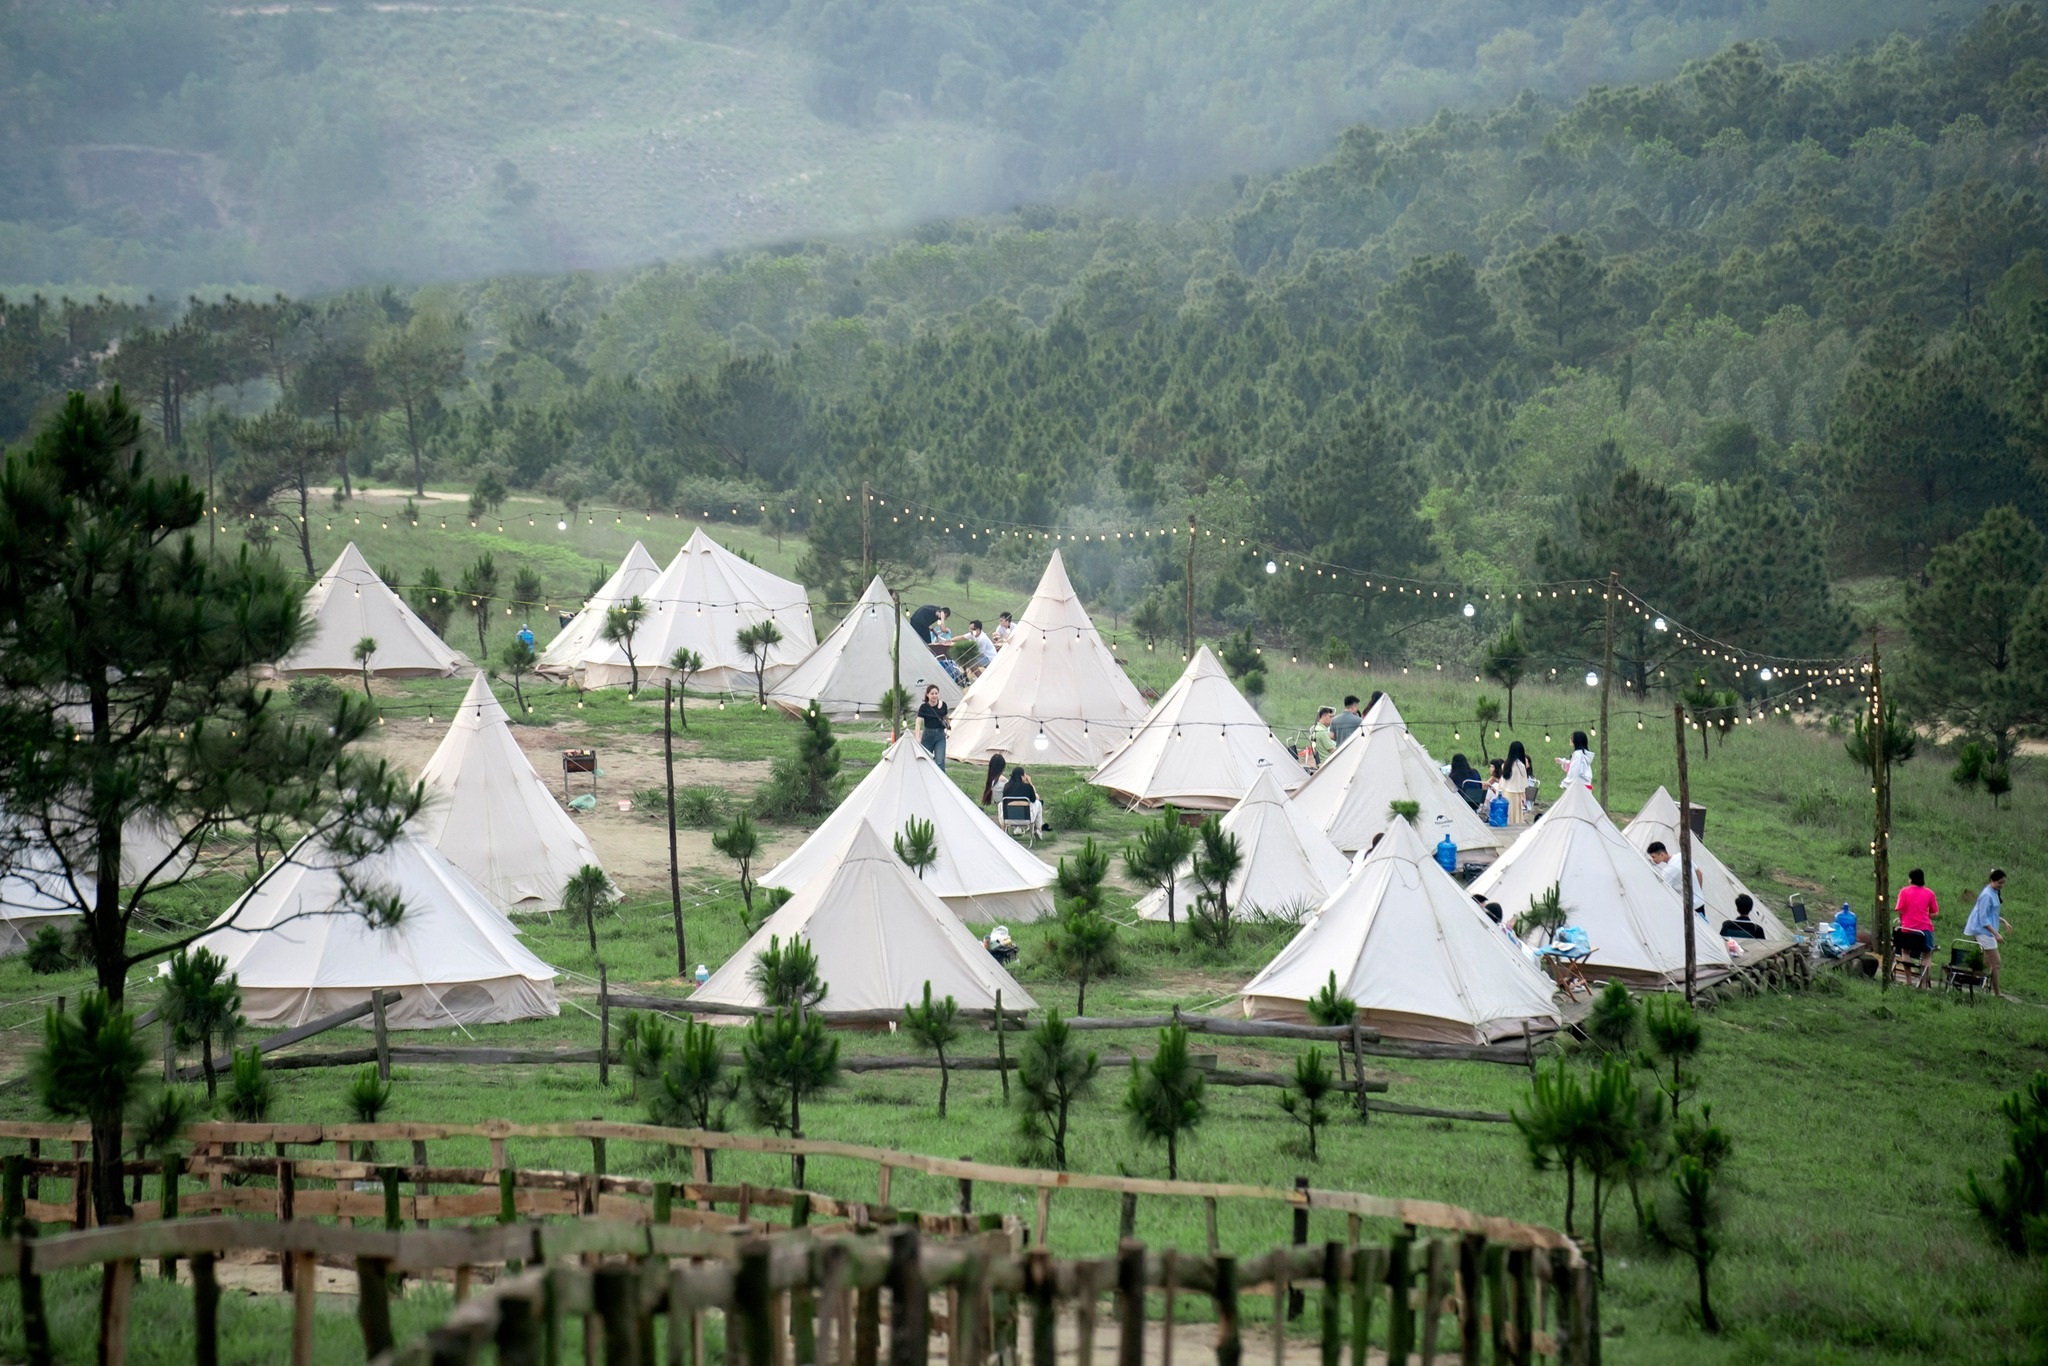 Khu vực cho thuê lều trại trên đỉnh Phượng Hoàng (thành phố Uông Bí, Quảng Ninh) cũng ghi nhận tình trạng "cháy phòng" trong đợt nghỉ lễ 30/4-1/5 (Ảnh: Nguyễn Thanh Hà).